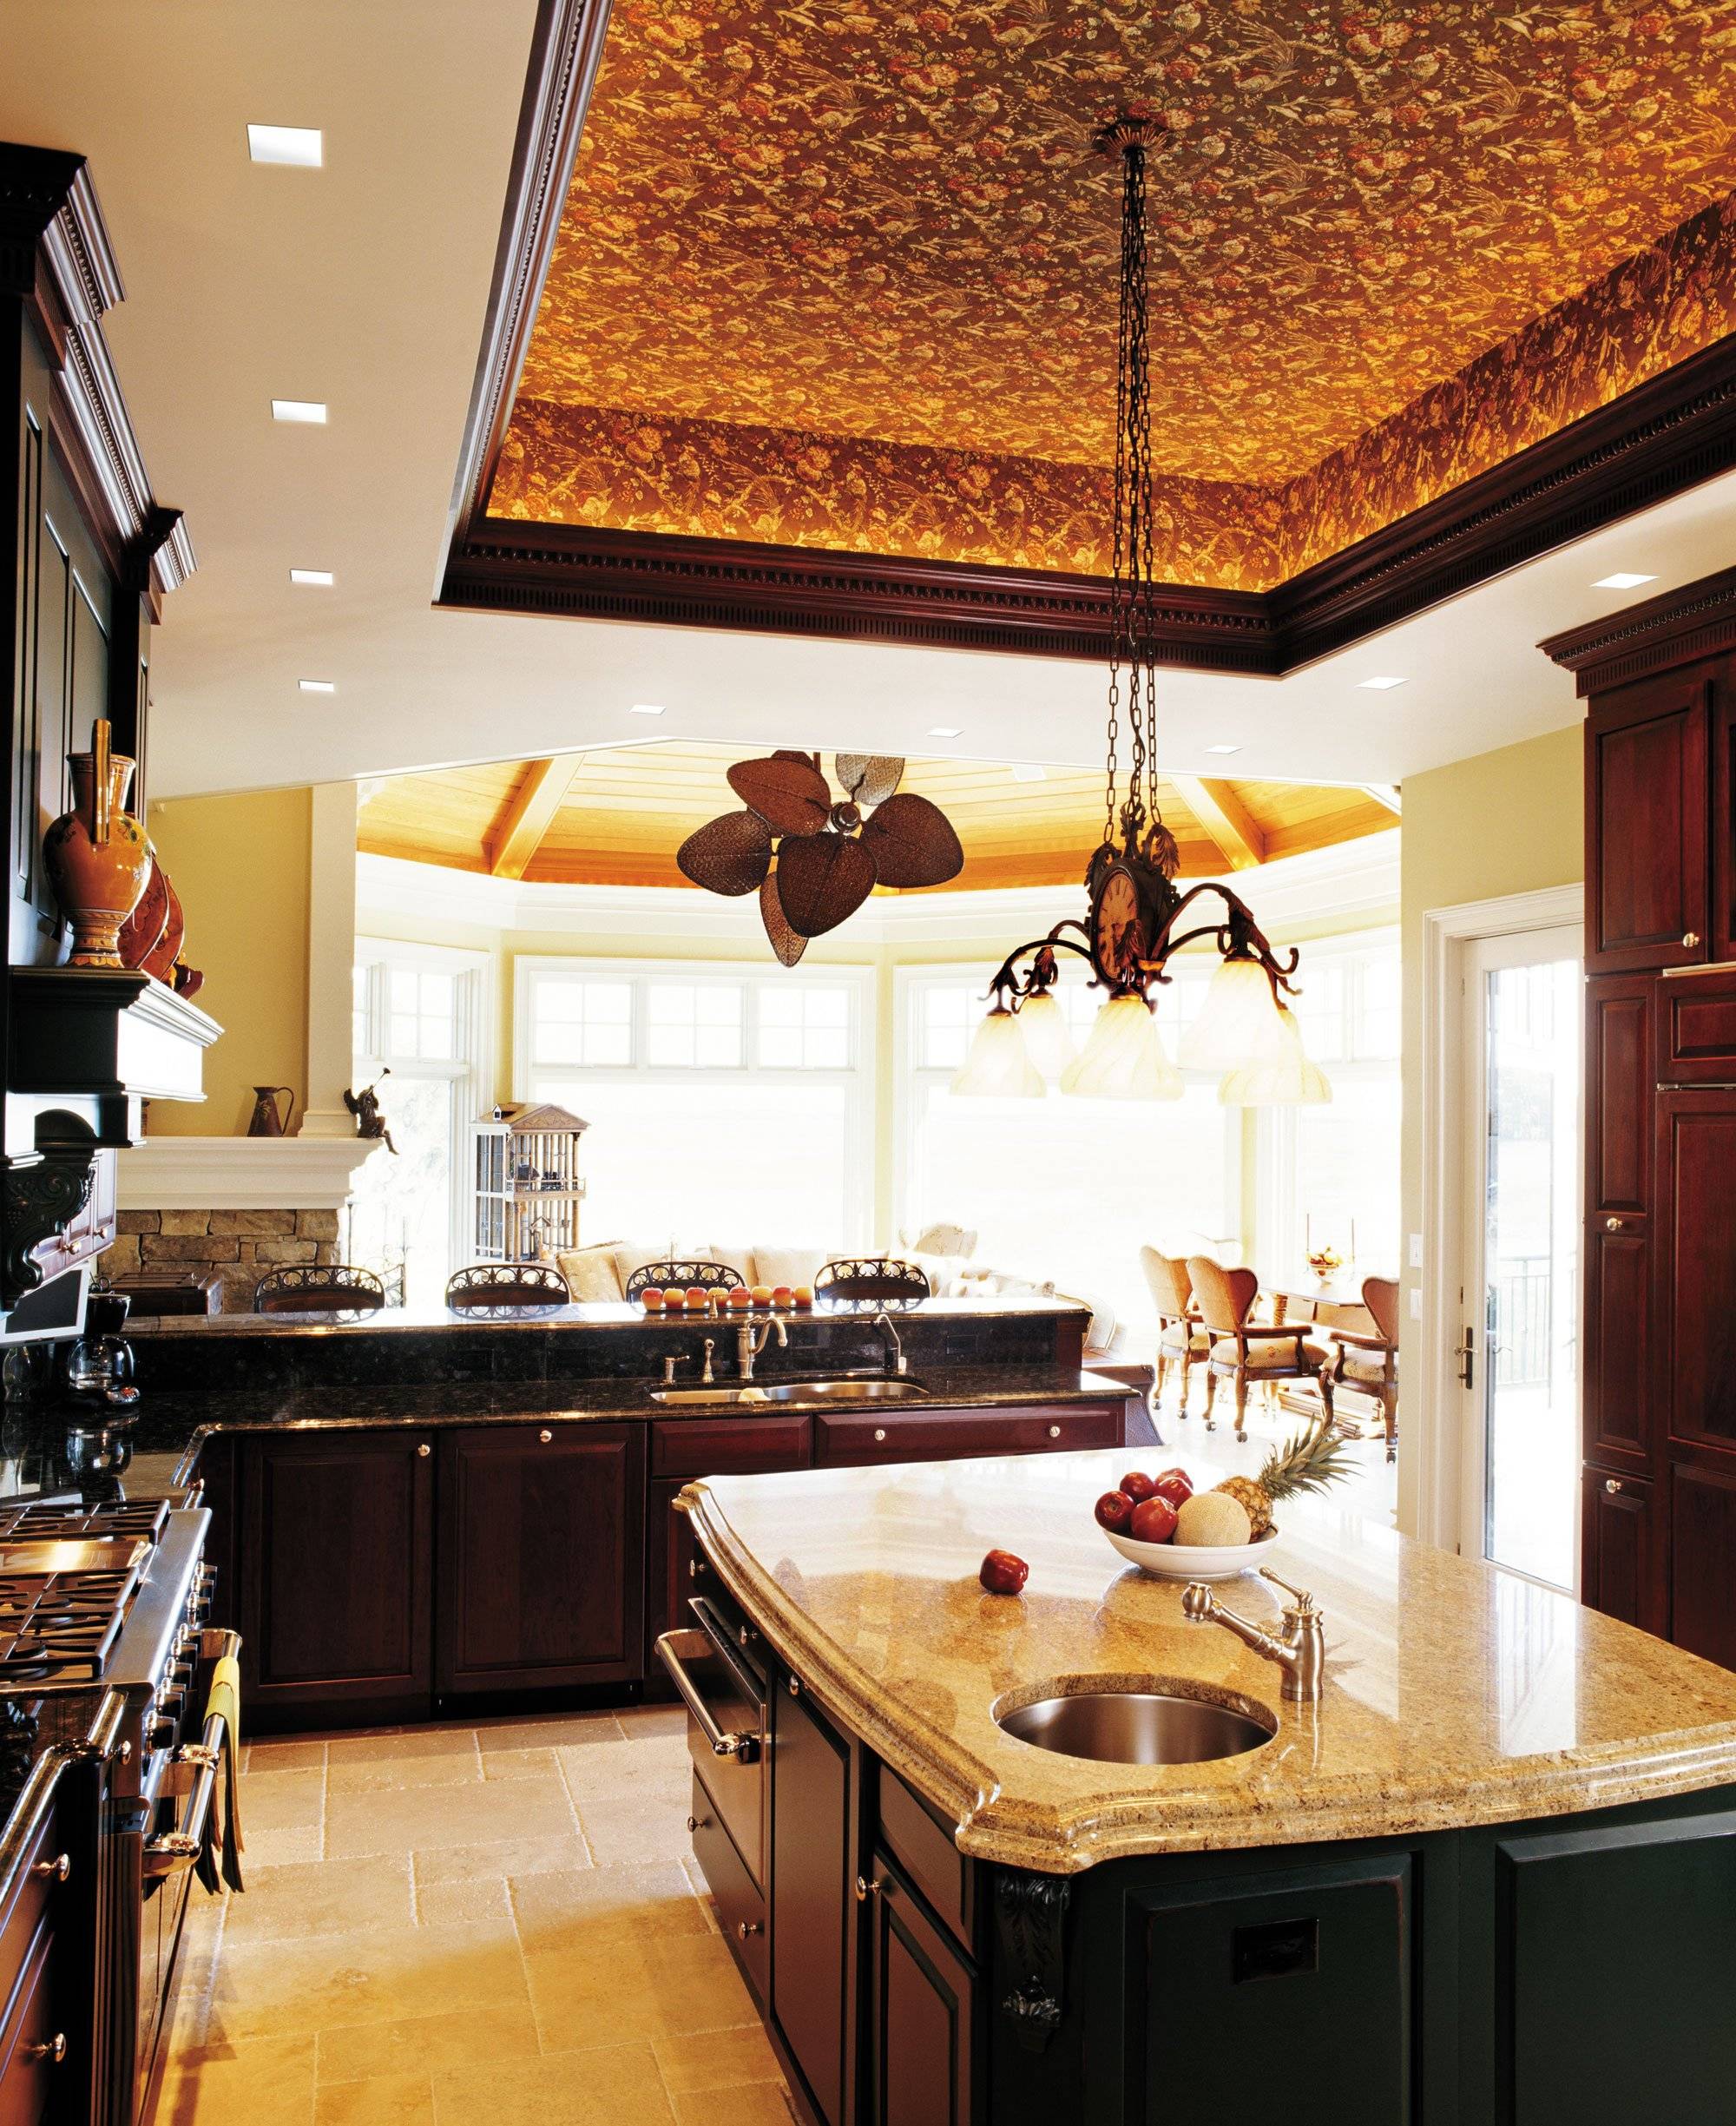 Дизайн потолка на кухне: идеи оформления с фото